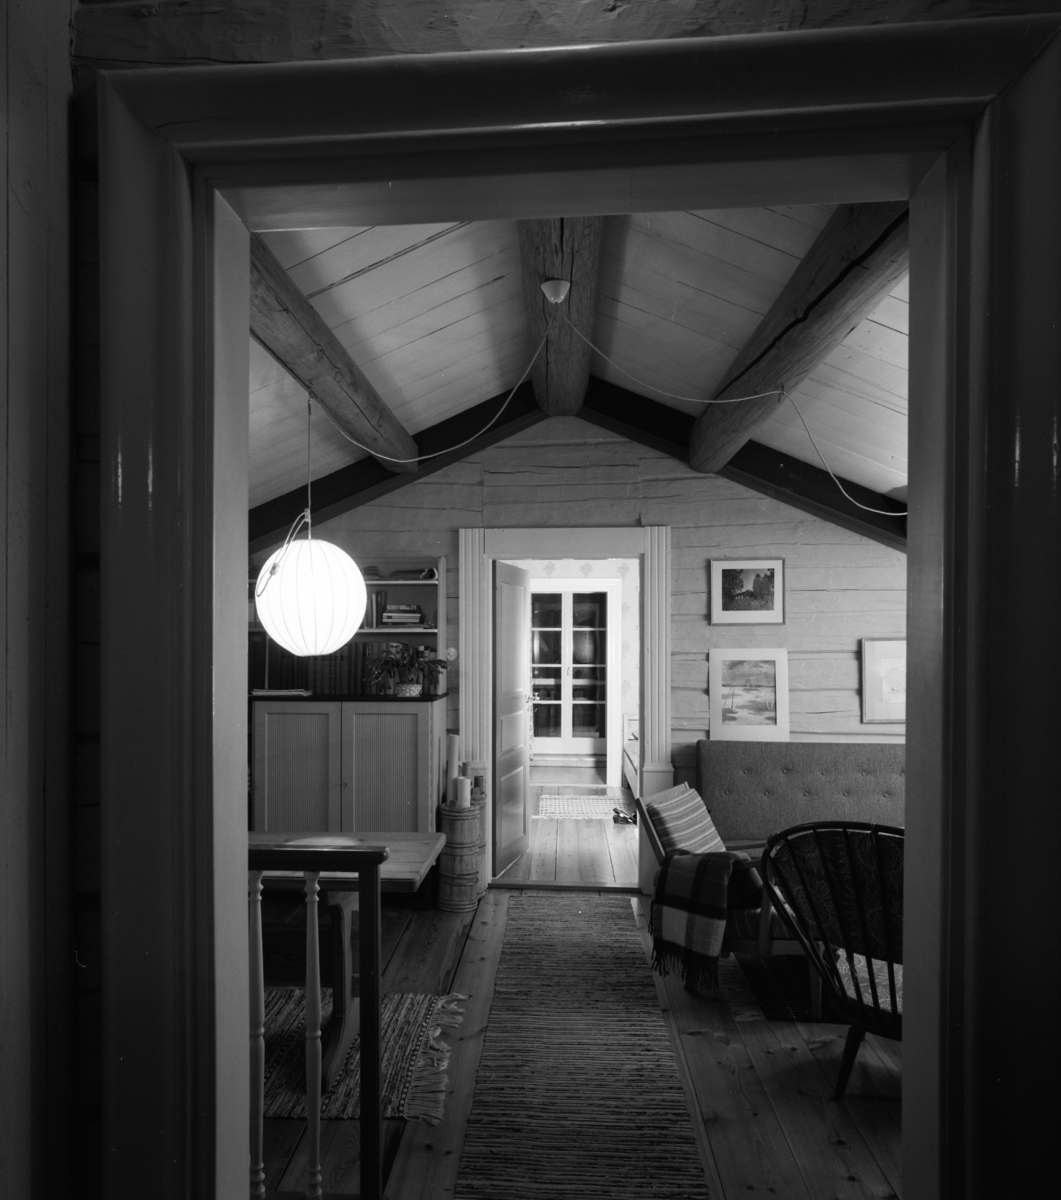 Ingenjör Lidströms hus
Interiör av vardagsrum på övervåningen, sett genom dörrhål